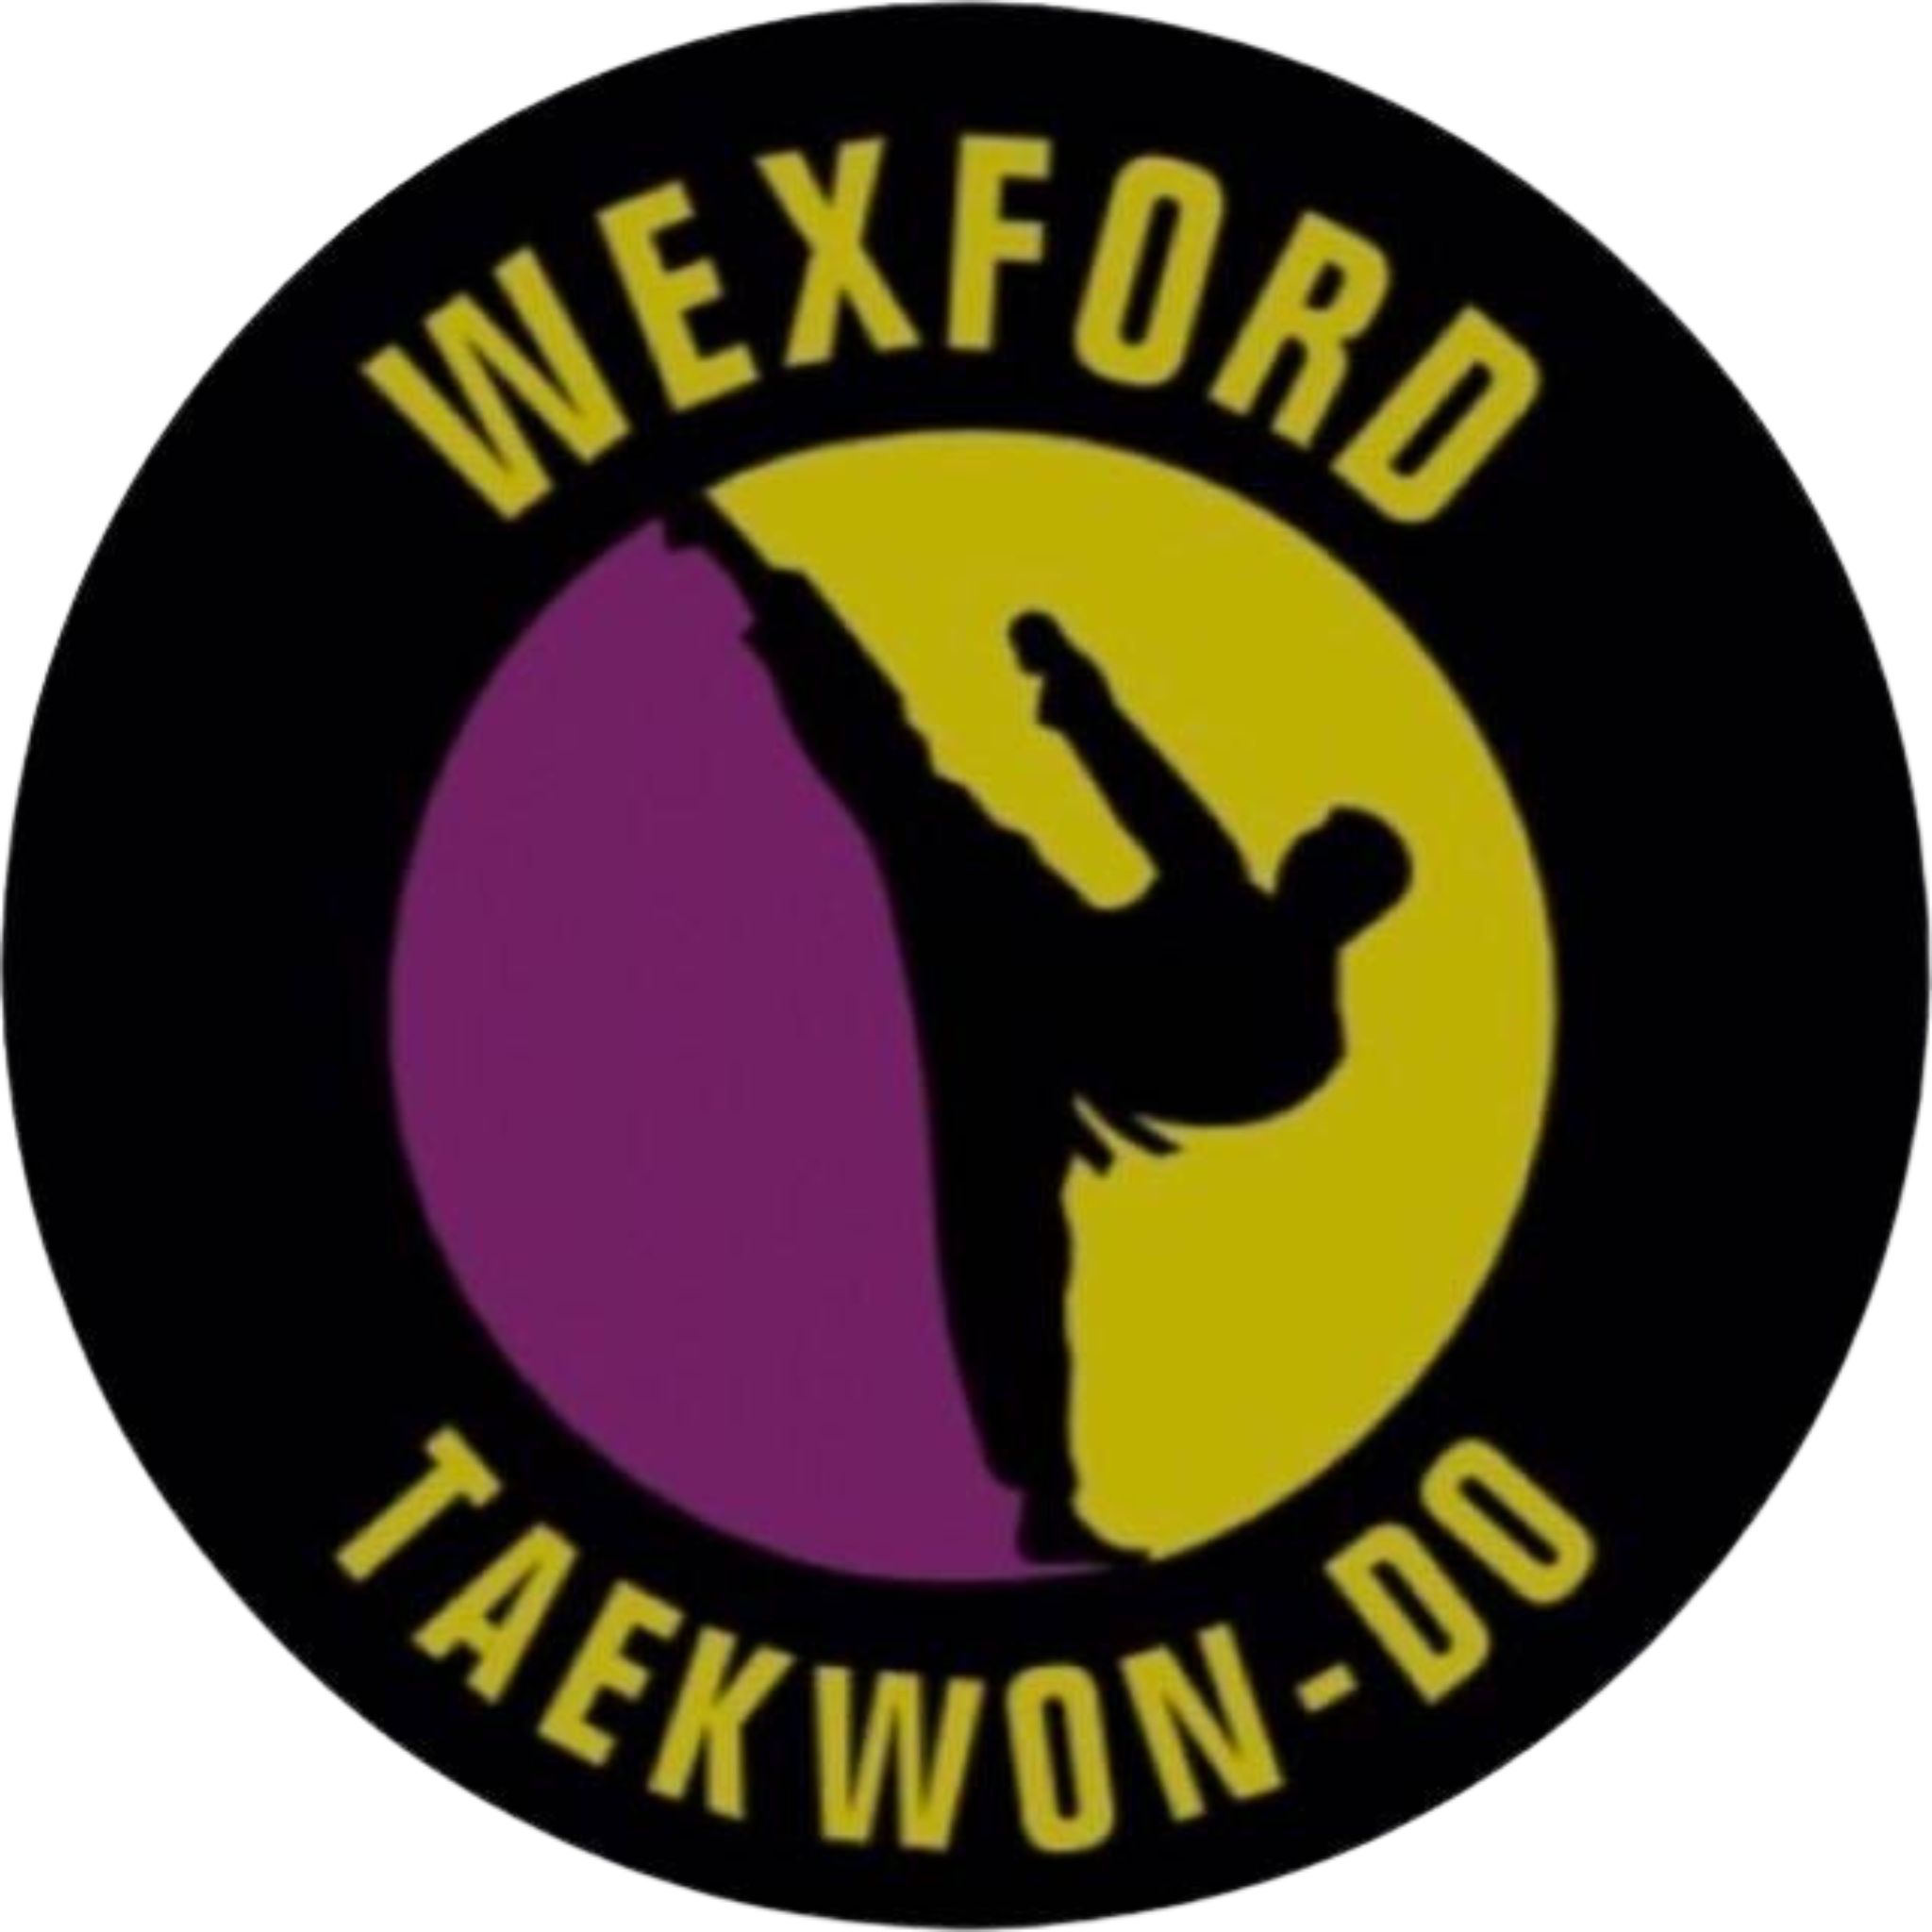 Wexford Taekwon-Do